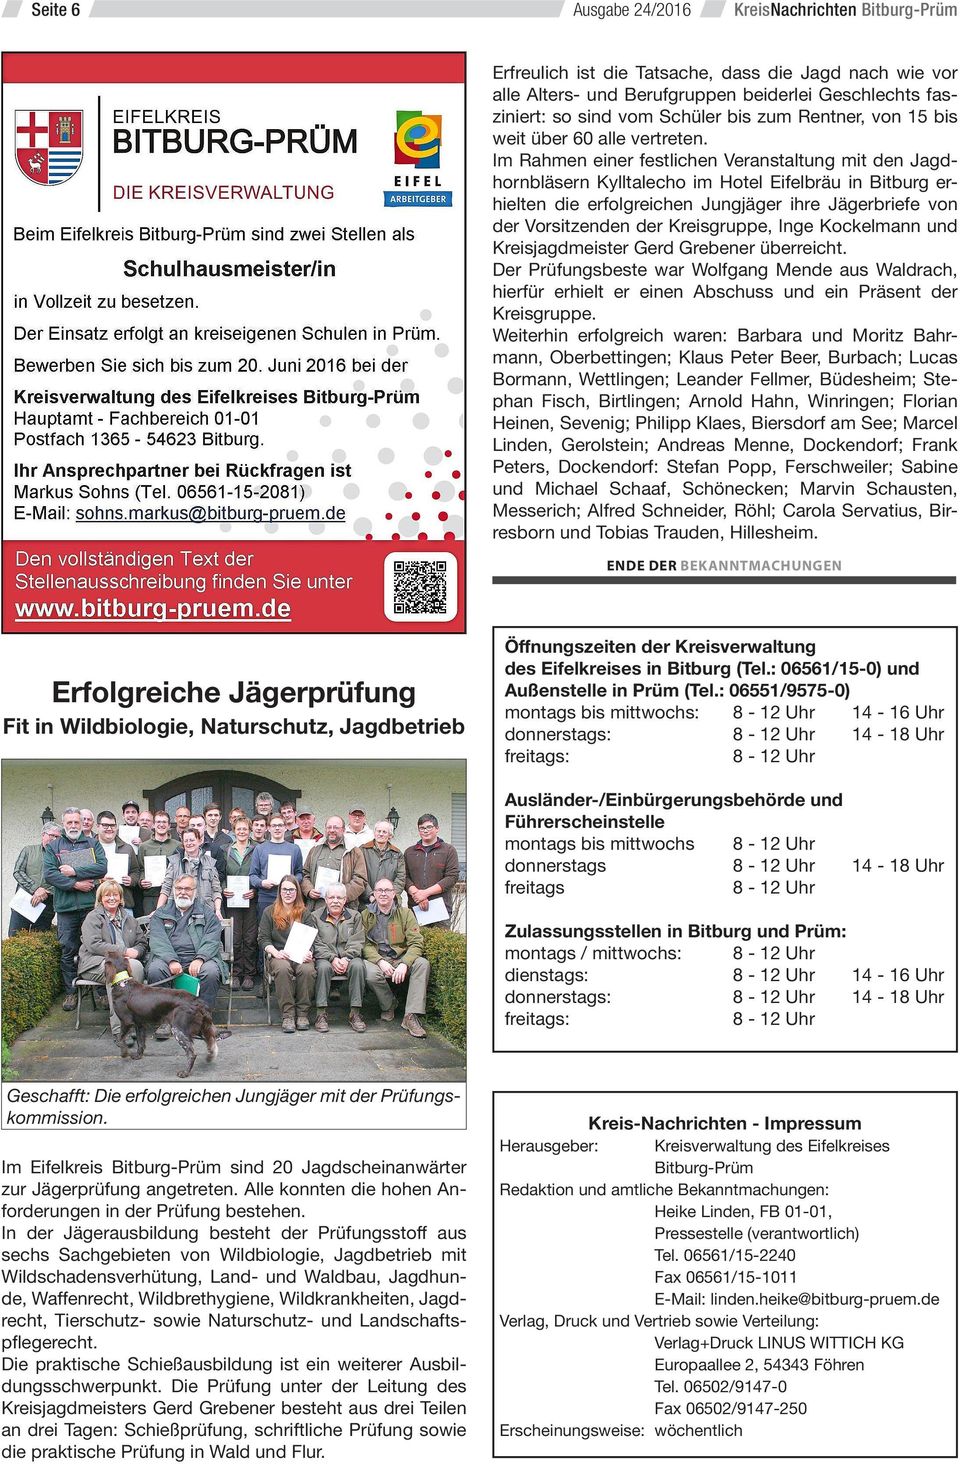 Im Rahmen einer festlichen Veranstaltung mit den Jagdhornbläsern Kylltalecho im Hotel Eifelbräu in Bitburg erhielten die erfolgreichen Jungjäger ihre Jägerbriefe von der Vorsitzenden der Kreisgruppe,